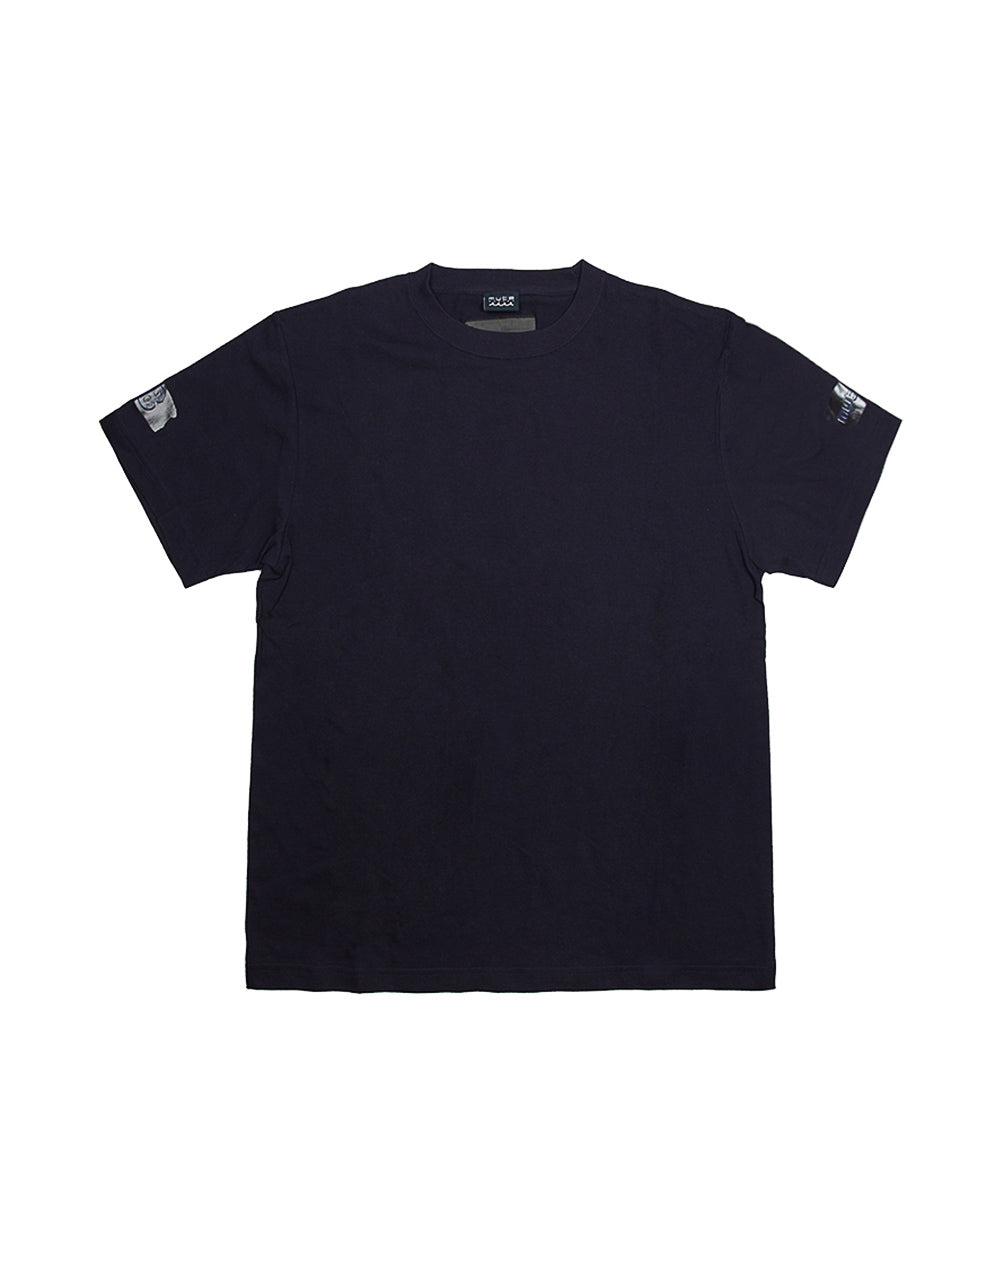 ACANTHUS x muta FOIL Tシャツ [全4色] – muta Online Store